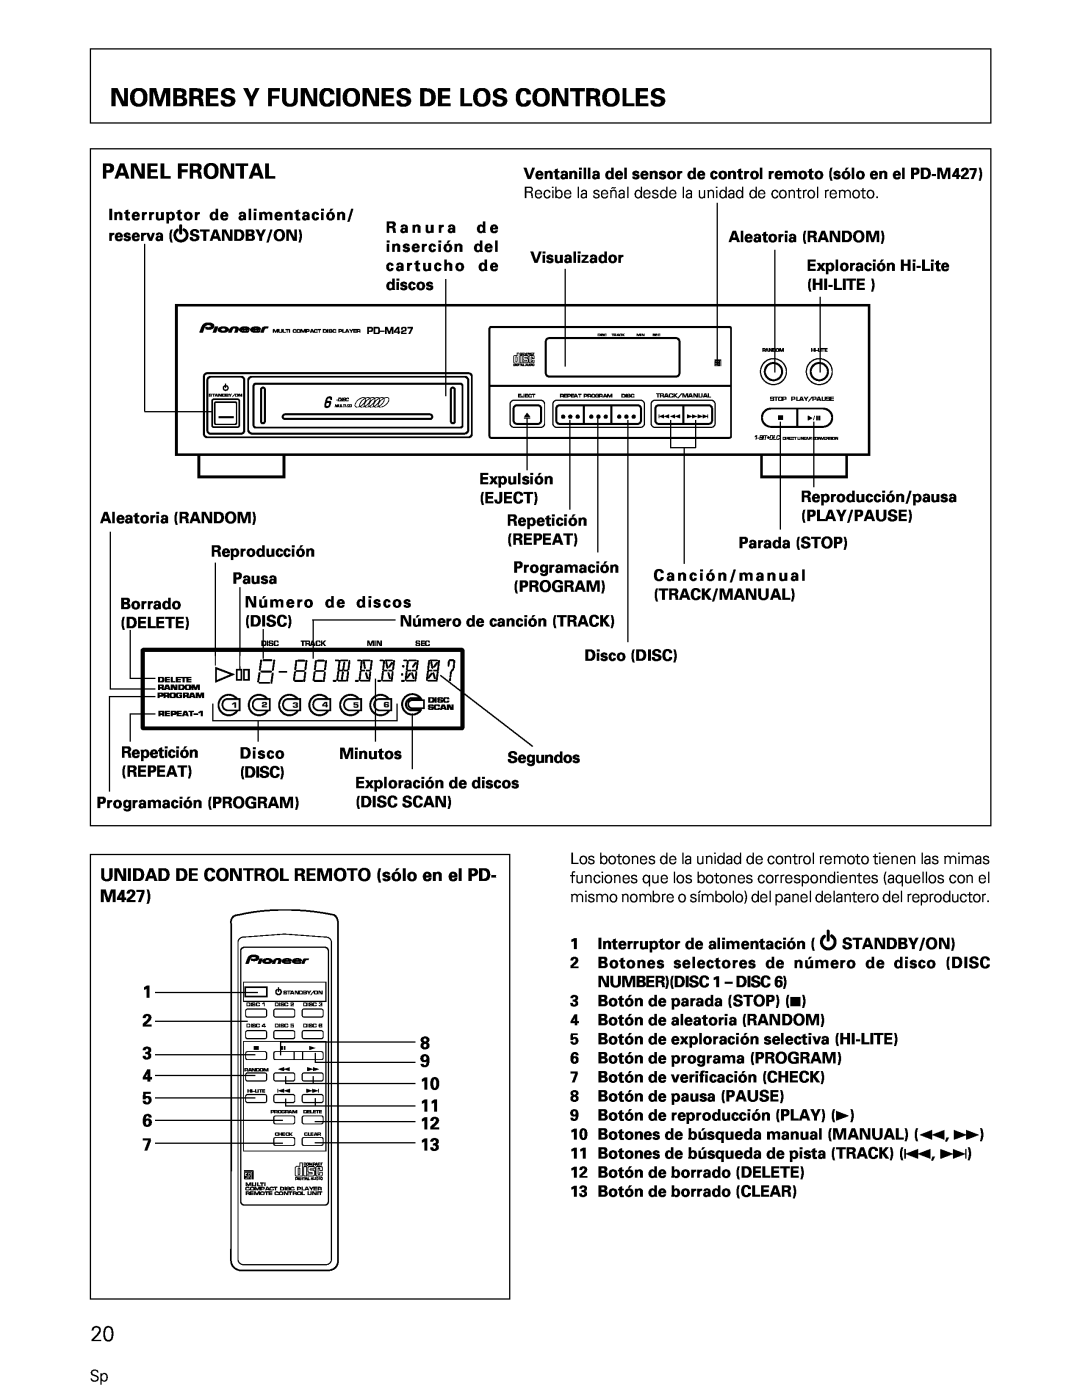 Pioneer PD-M407, PD-M427 Nombres Y Funciones De Los Controles, Panel Frontal, UNIDAD DE CONTROL REMOTO sólo en el PD- M427 